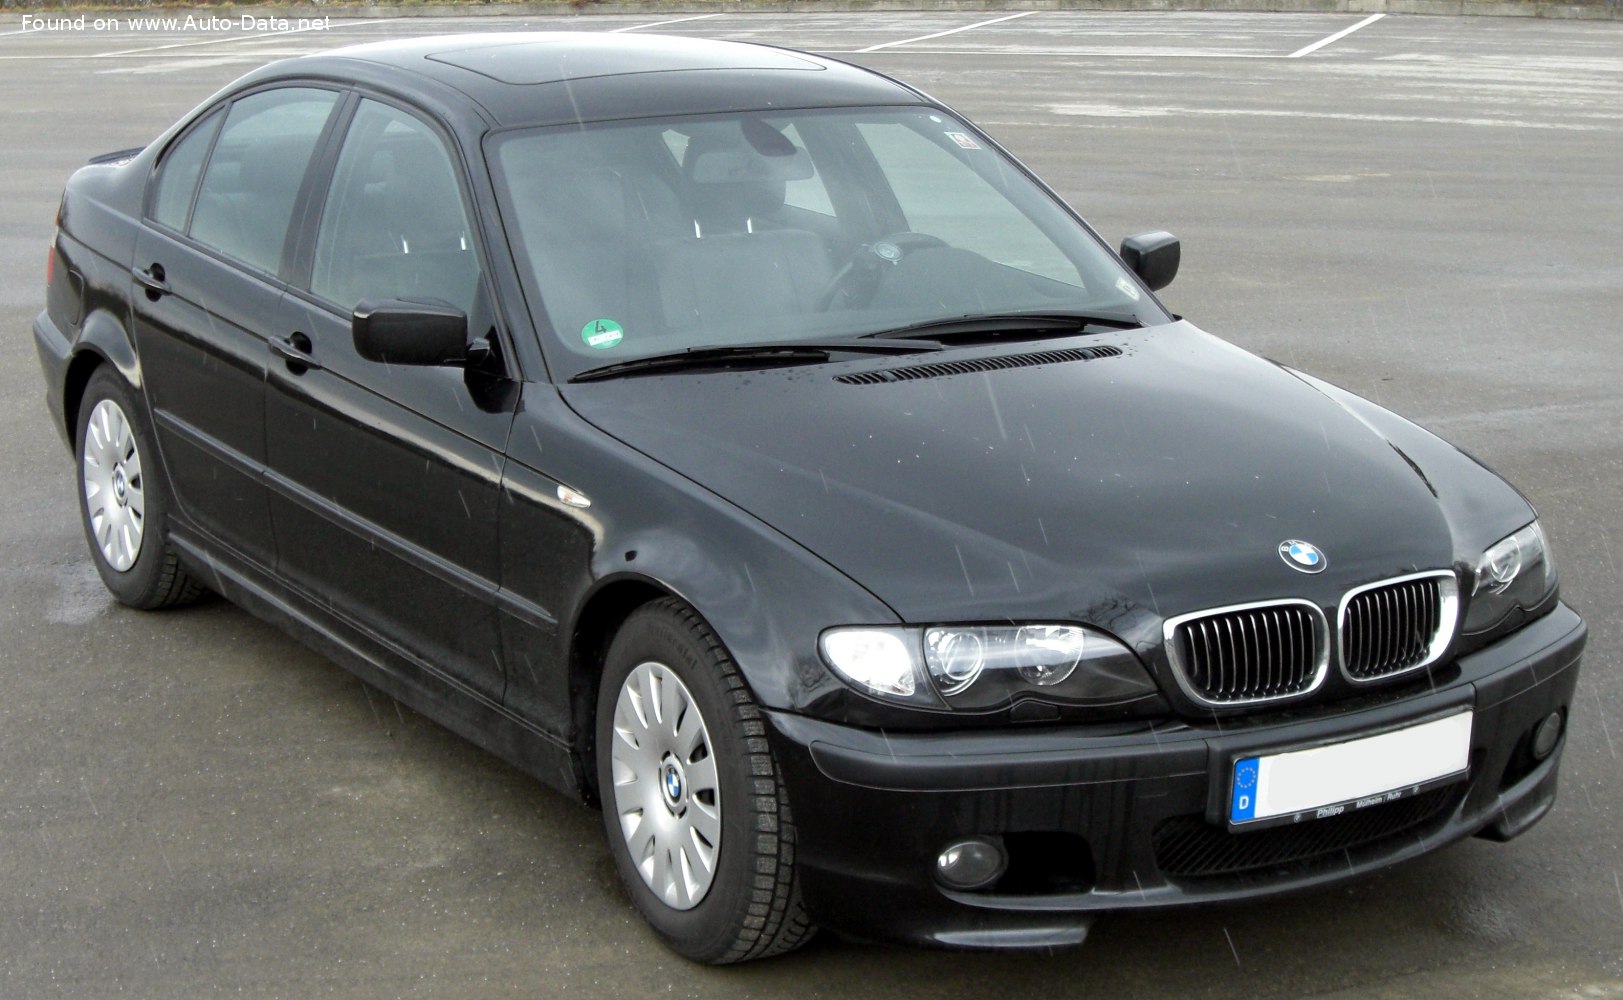 2001 BMW 3 Series Sedan (E46, facelift 2001) 325i (192 Hp) | Technical specs, data, fuel consumption, Dimensions